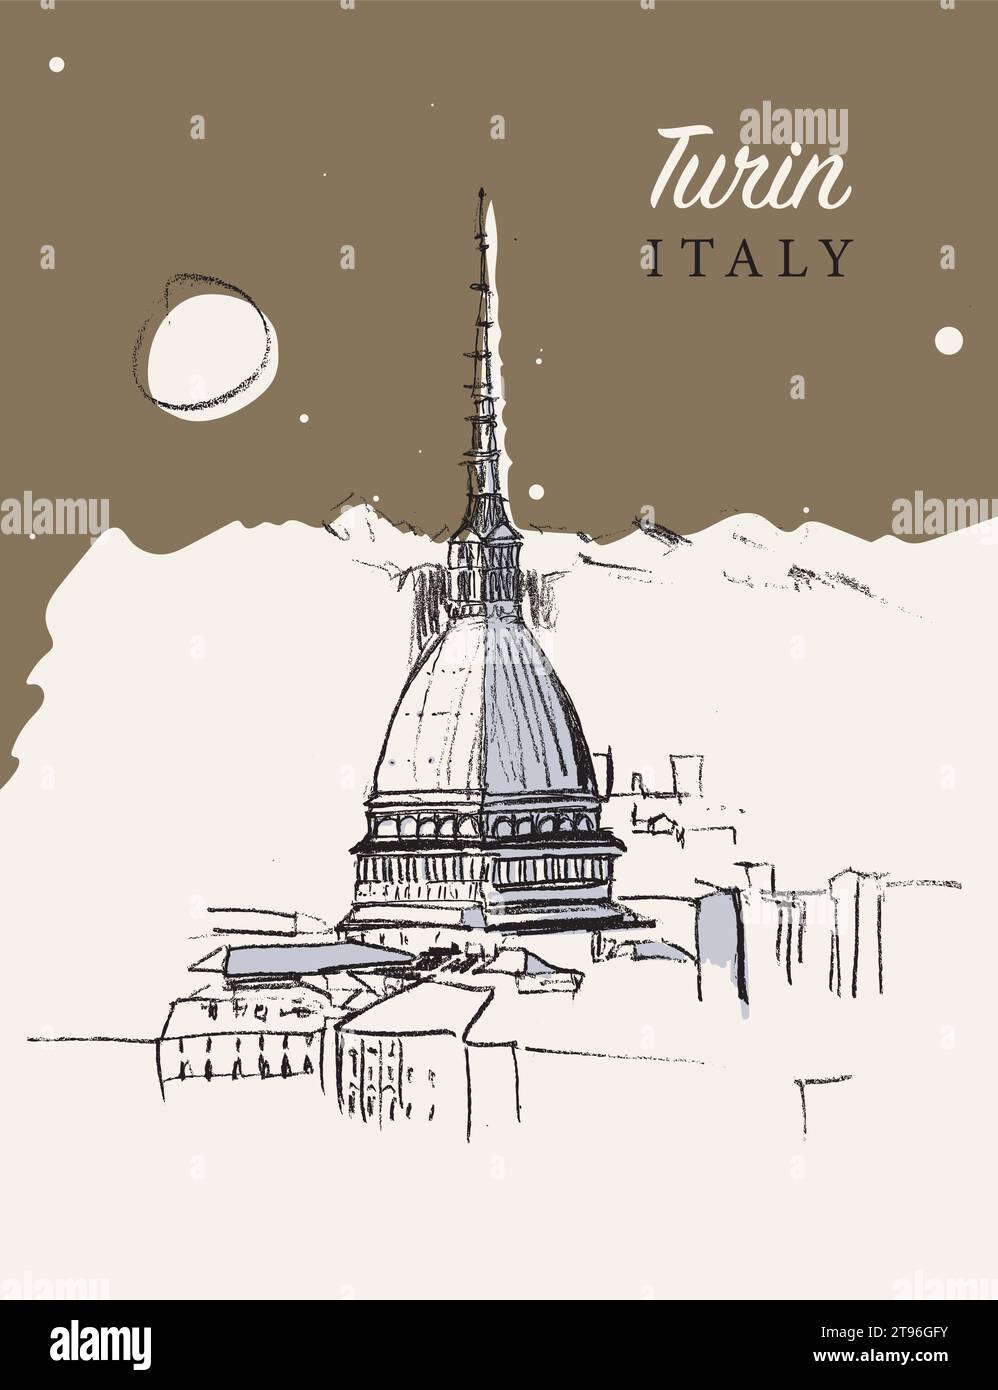 Handgezeichnete Vektor-Skizzenillustration der Stadt Turin im Piemont in Italien. Stock Vektor